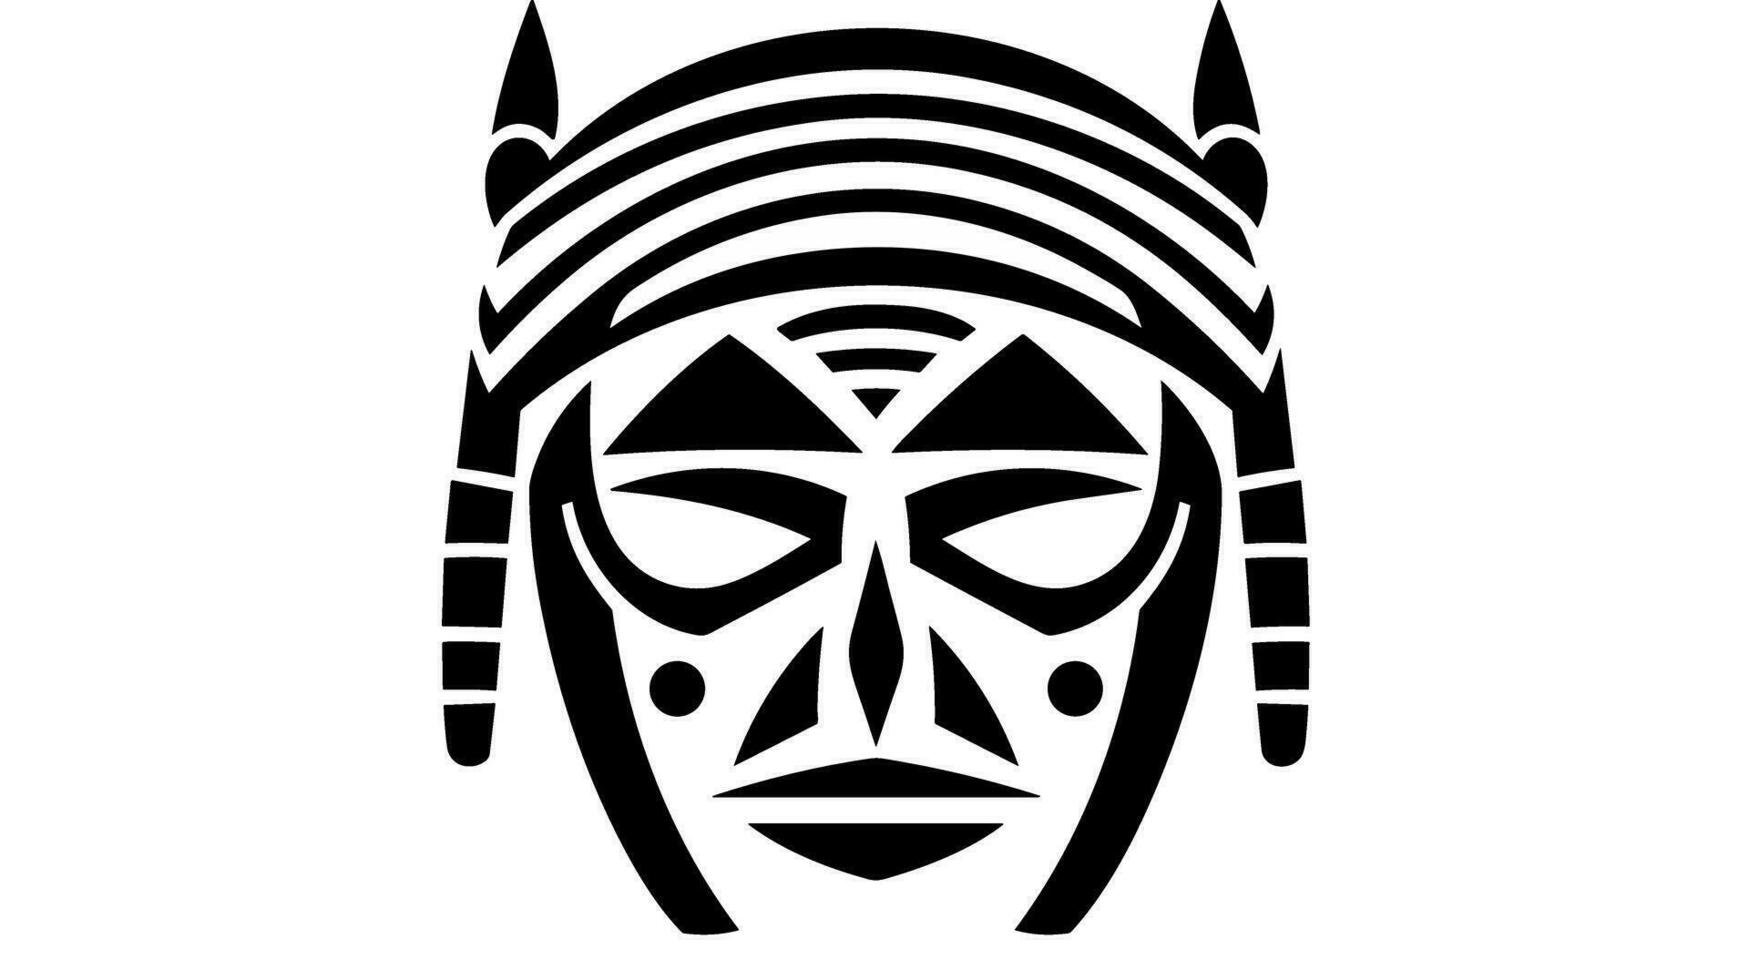 ontzagwekkend Afrikaanse oorlog masker onthulling de krachtig tradities en symboliek achter deze oude artefact vector